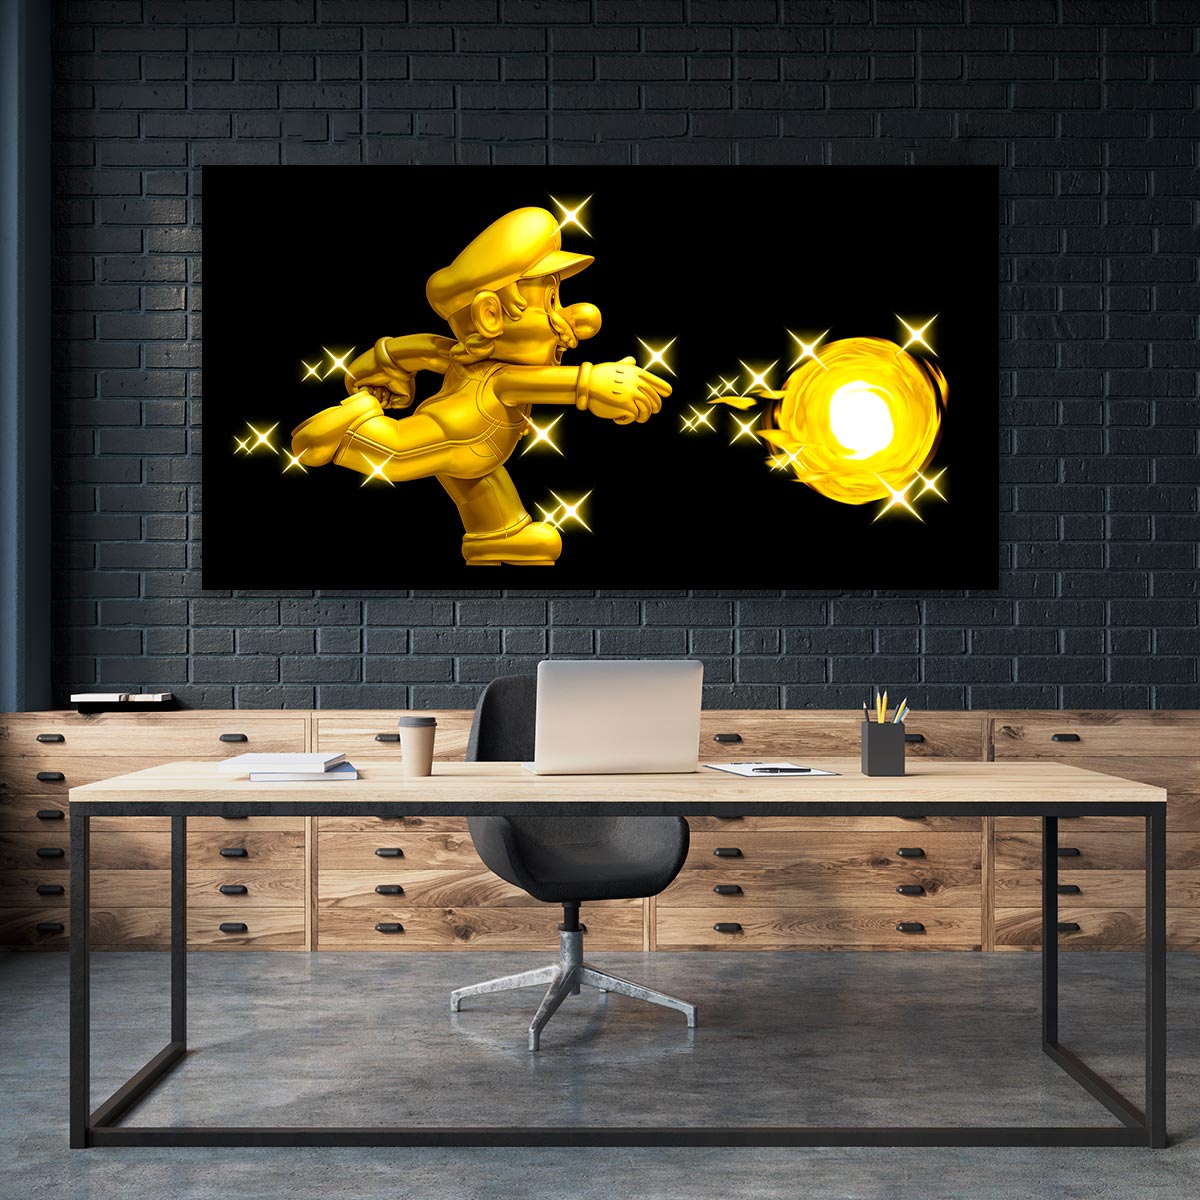 Super Mario Golden